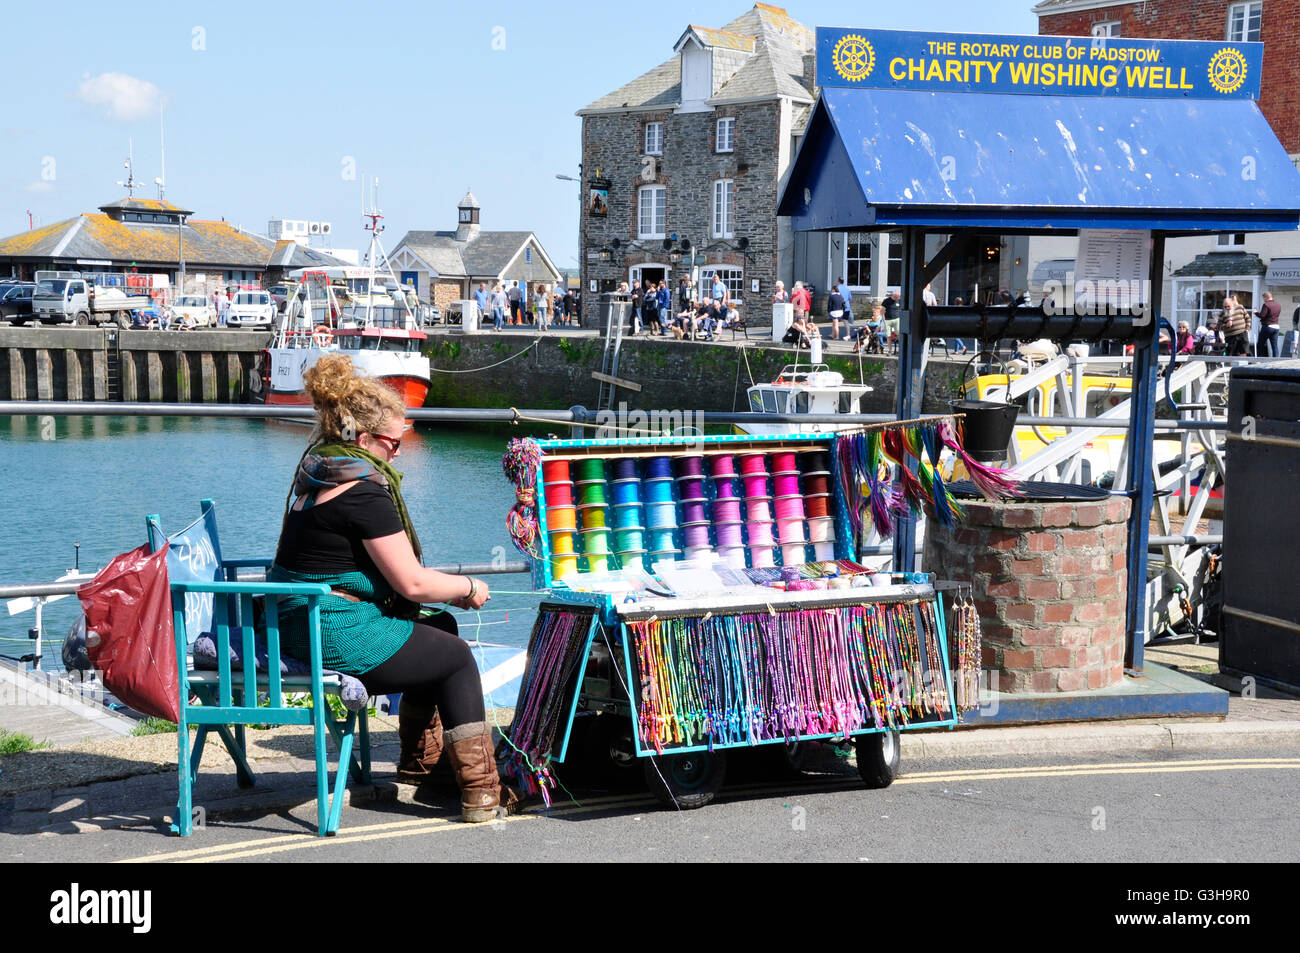 - Cornwall Padstow Harbour - sur le quai du vendeur bracelet d'amitié - la charité qui veulent bien - couleurs brillantes - sunlight Banque D'Images